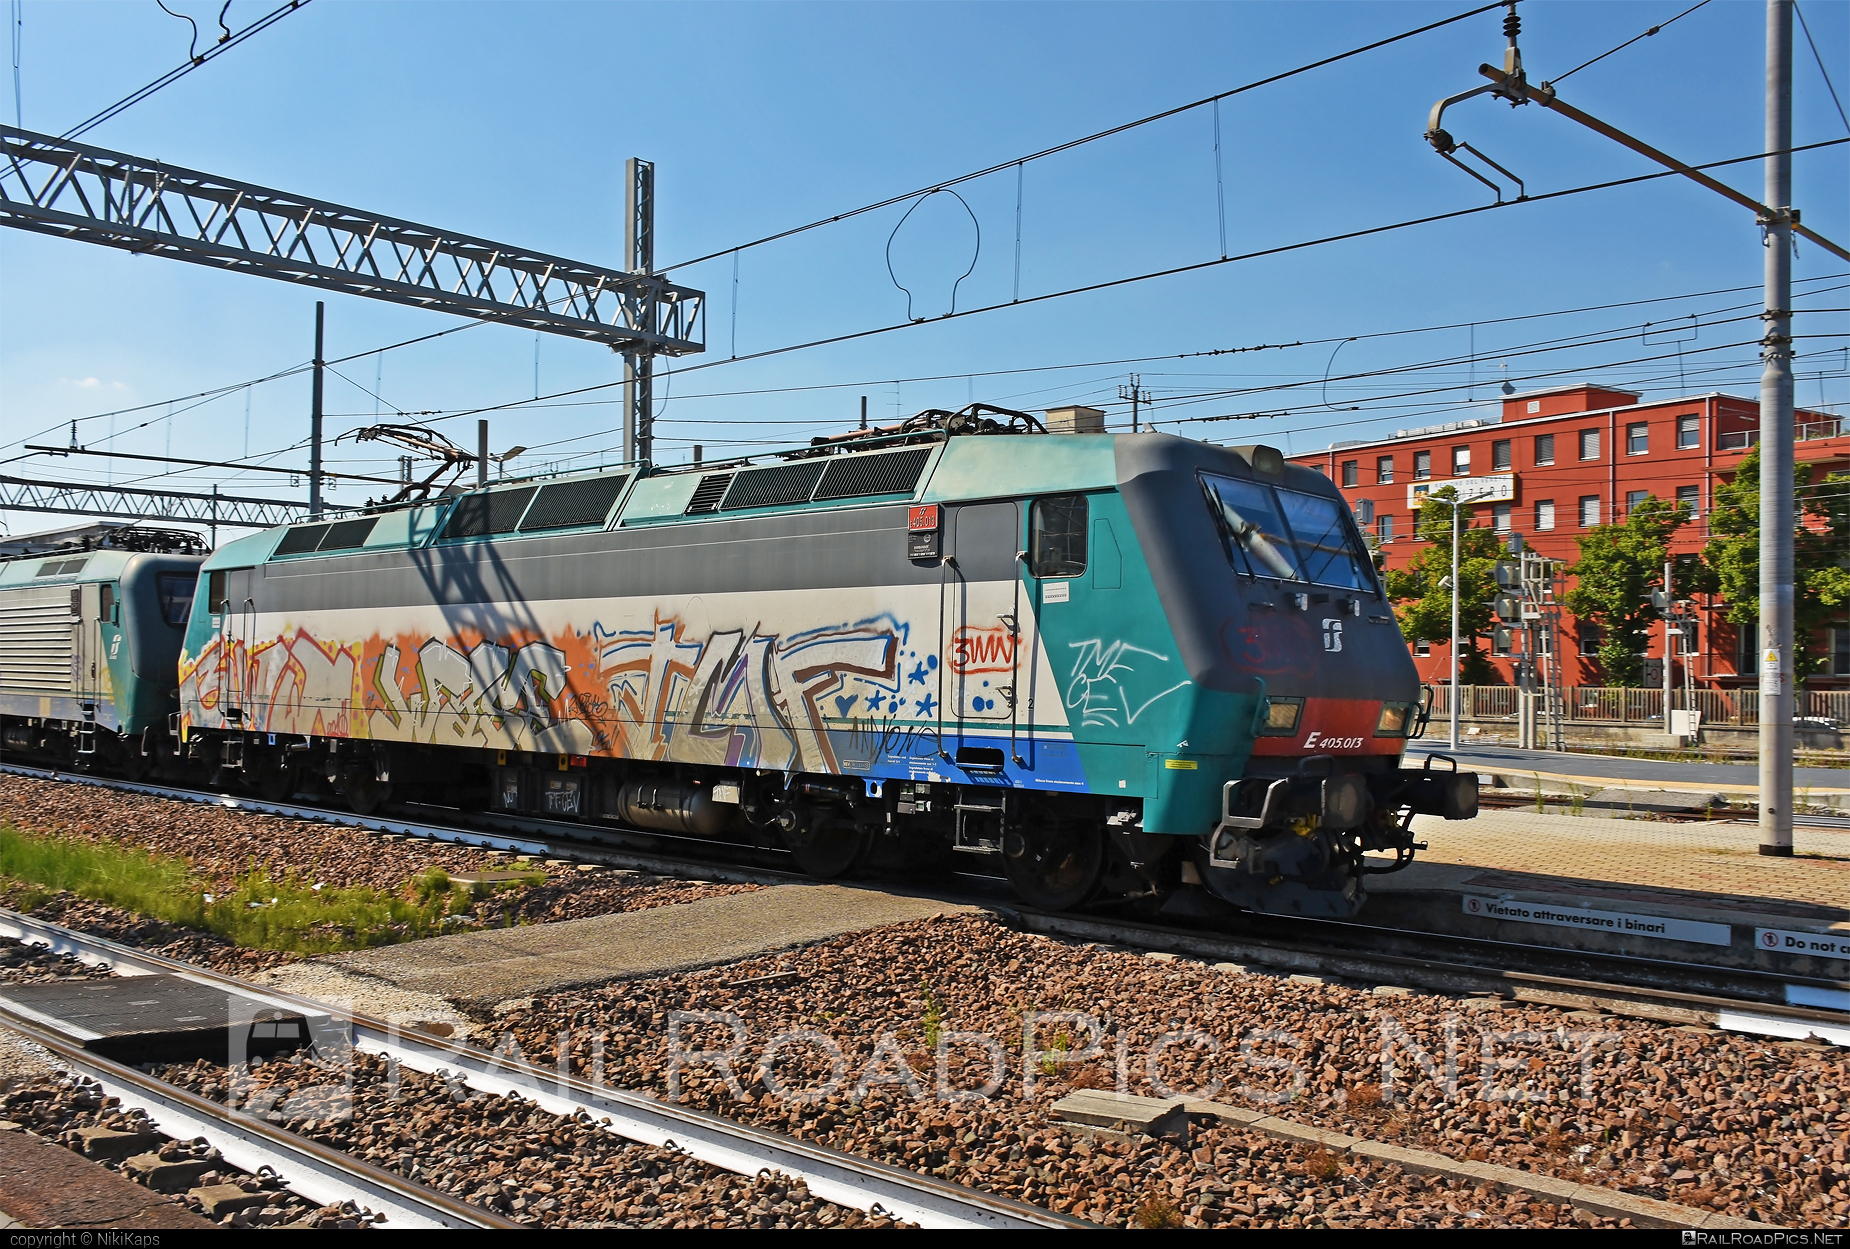 Bombardier Class E.405 - E405.013 operated by Mercitalia Rail S.r.l. #bombardier #bombardierE405 #ferroviedellostato #fs #fsClassE405 #fsitaliane #graffiti #mercitalia